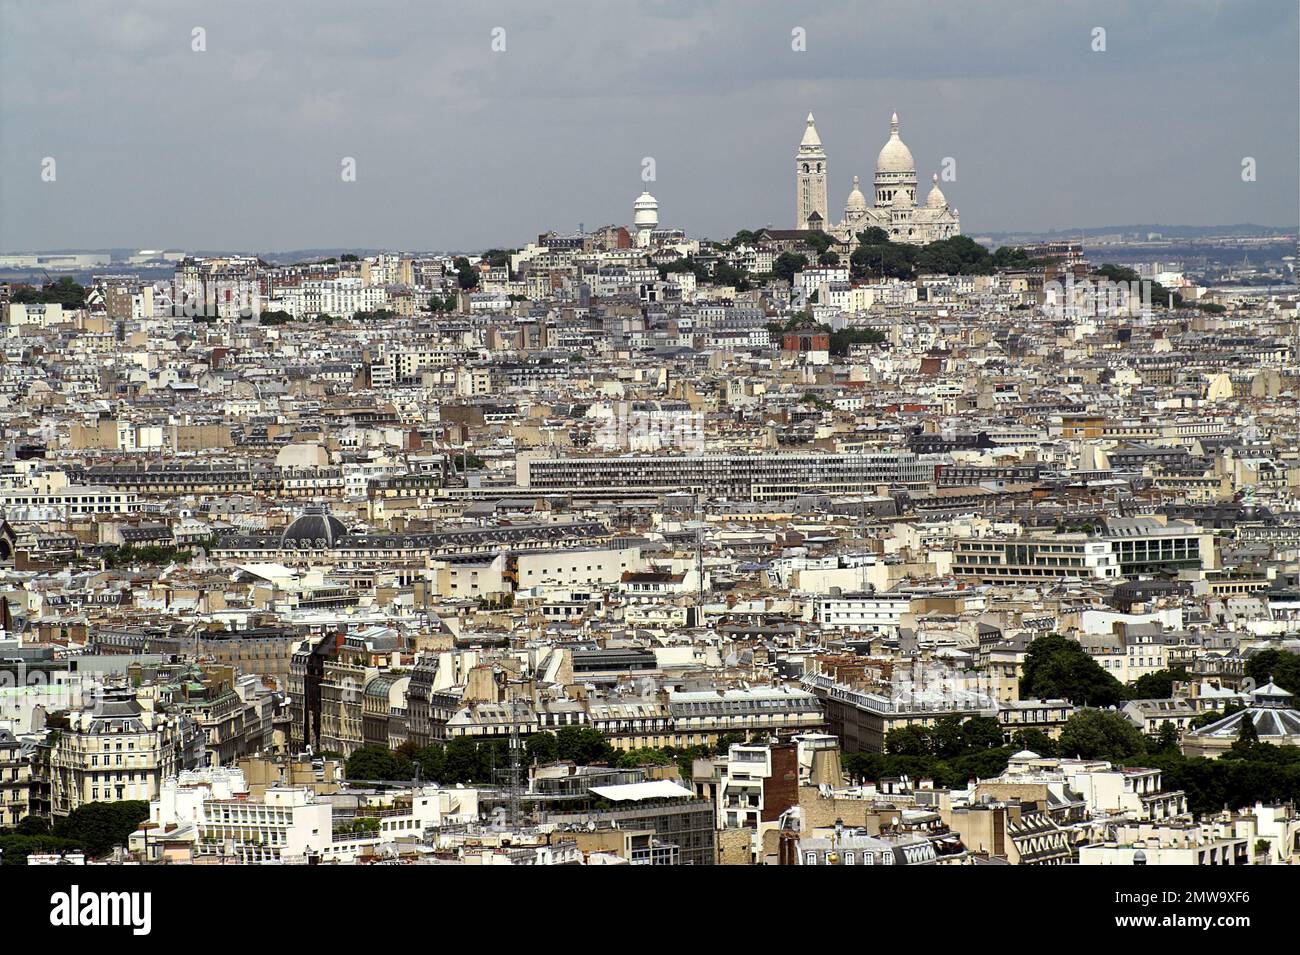 Paryż, Paris, Francja, France, Frankreich, Grand panorama de Paris; Breites Panorama von Paris; Szeroka panorama Paryża; vue sur la colline de Montmartre Banque D'Images